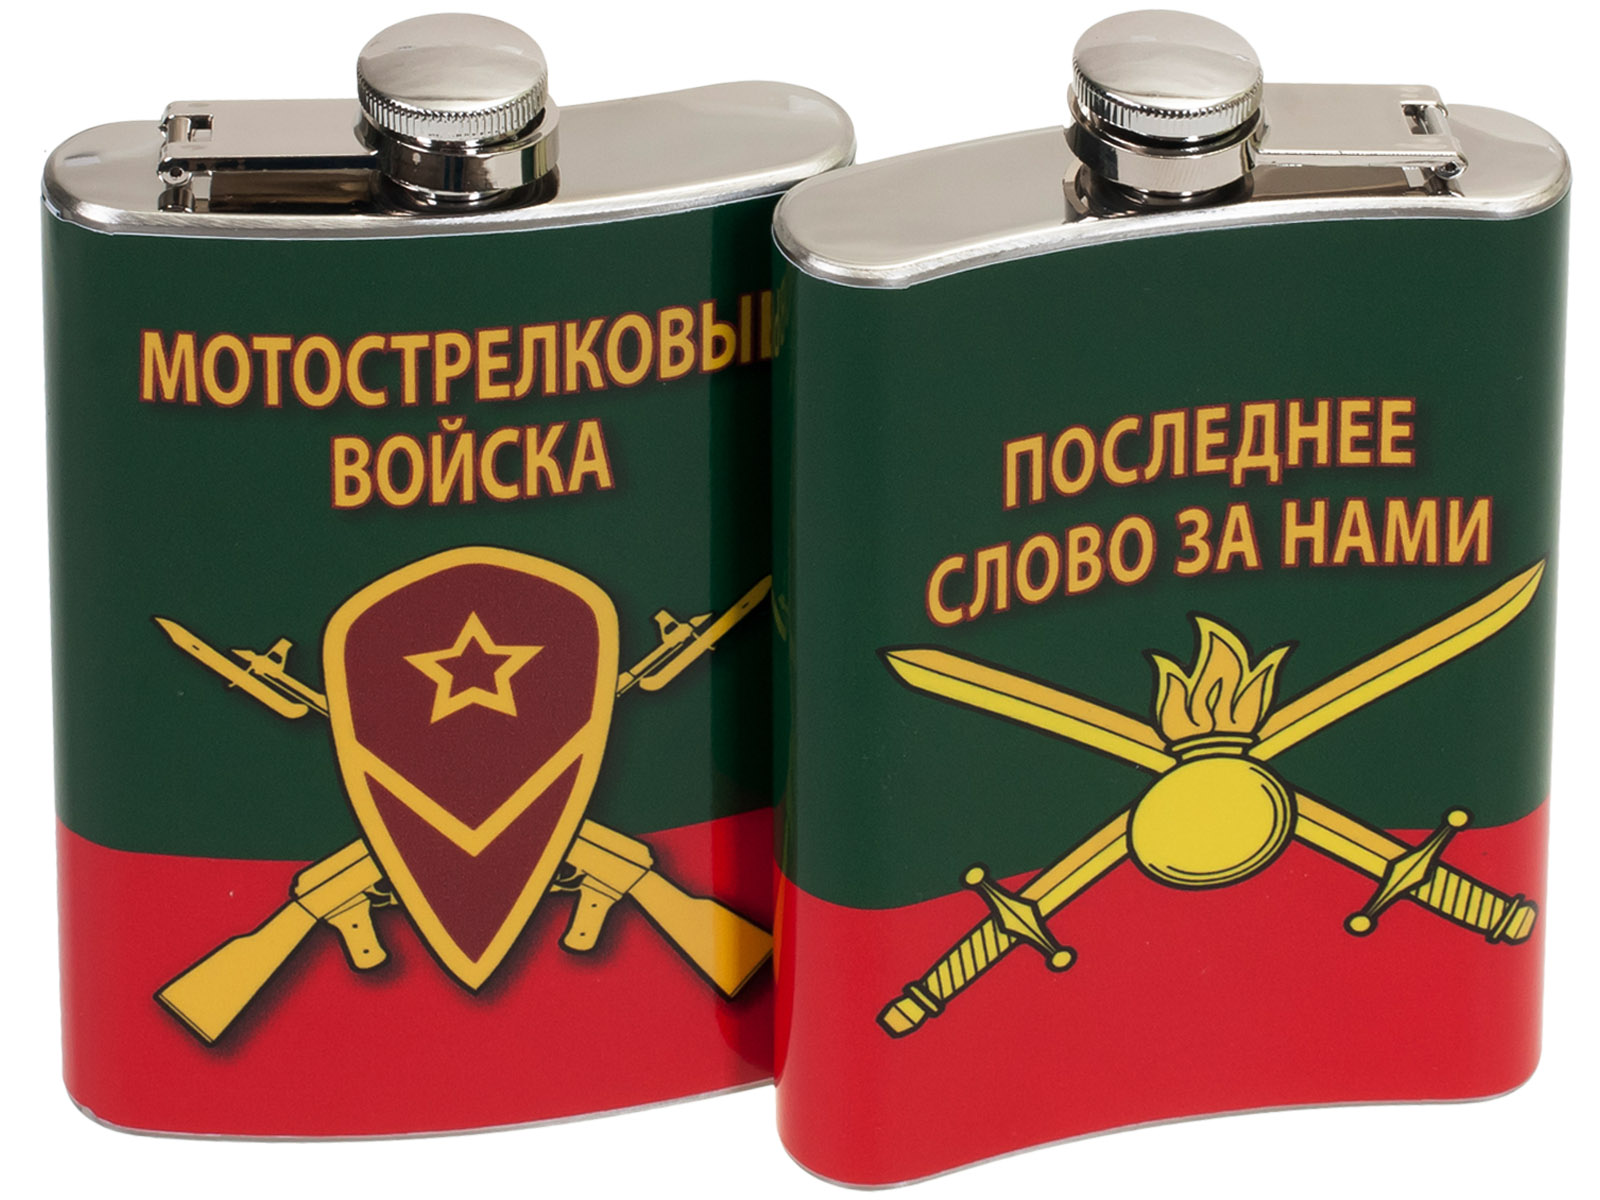 Фляжка с символикой Мотострелковых войск 